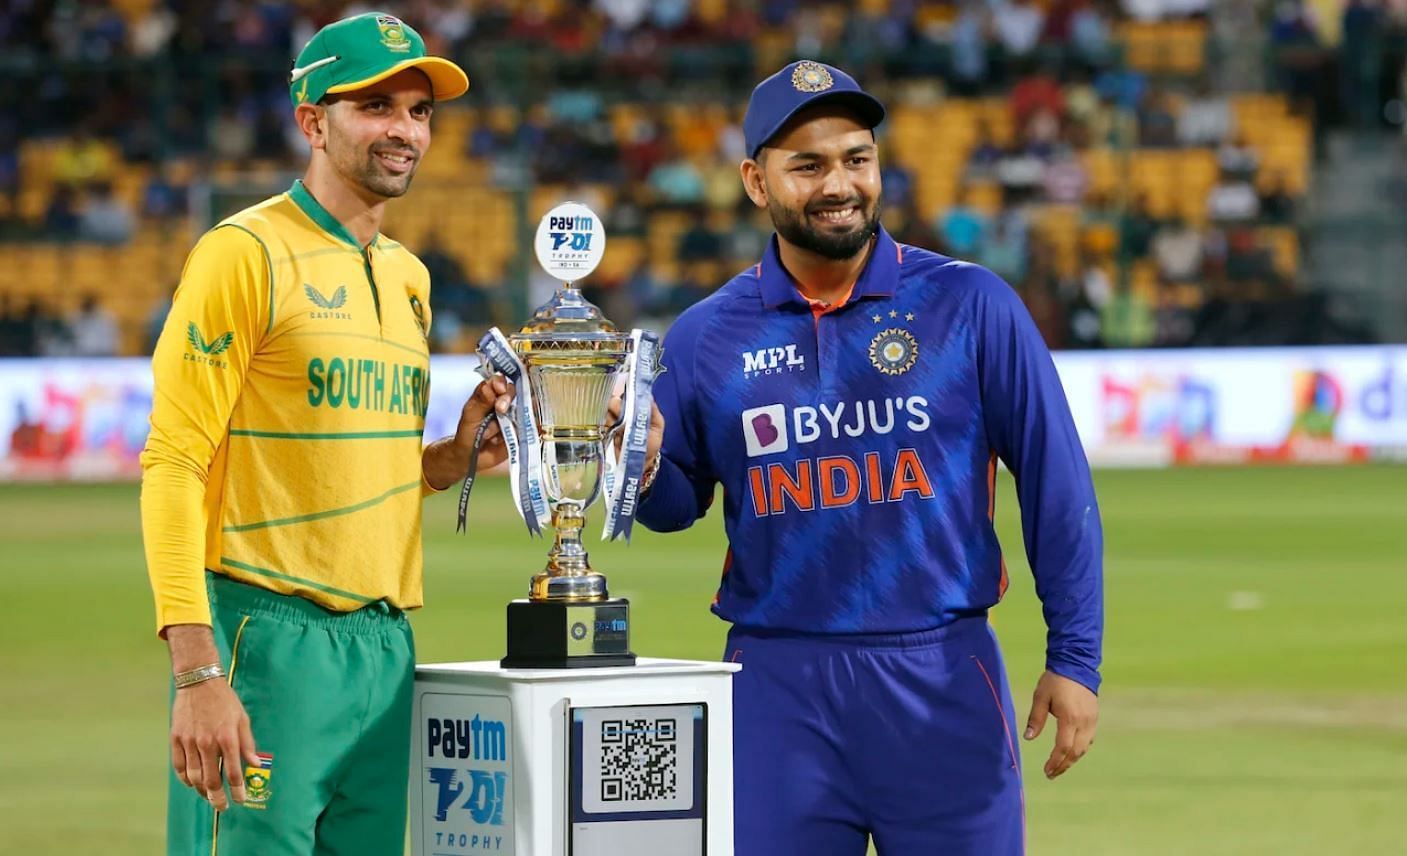 भारत और दक्षिण अफ्रीका के बीच खेली गई ये टी20 सीरीज 2-2 की बराबरी पर खत्म हुई थी